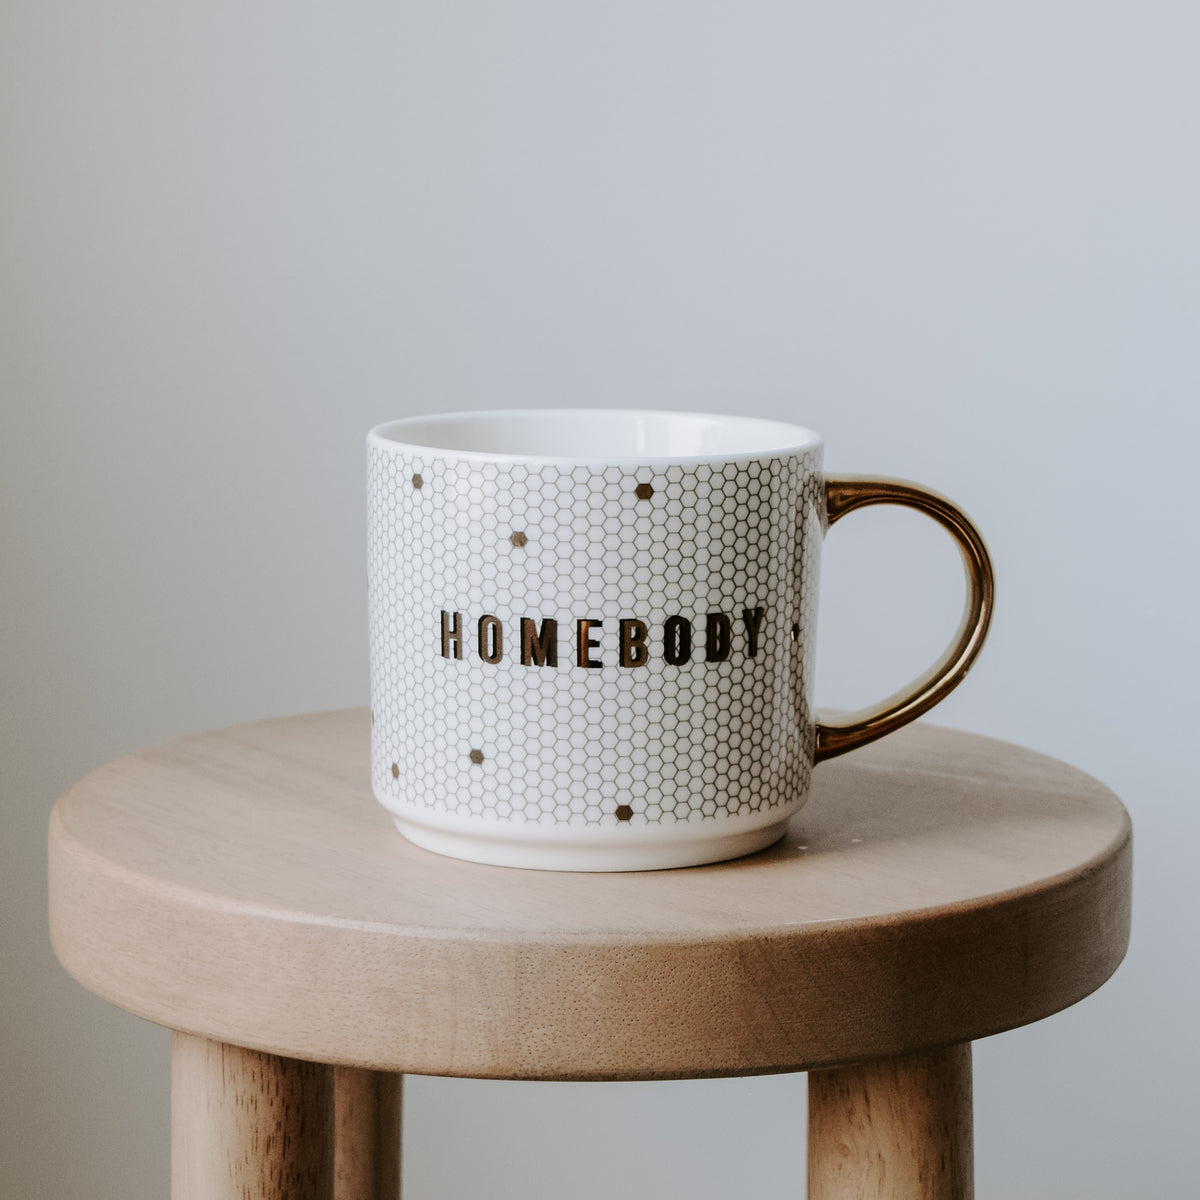 Homebody Gold Tile Coffee Mug - 17 oz